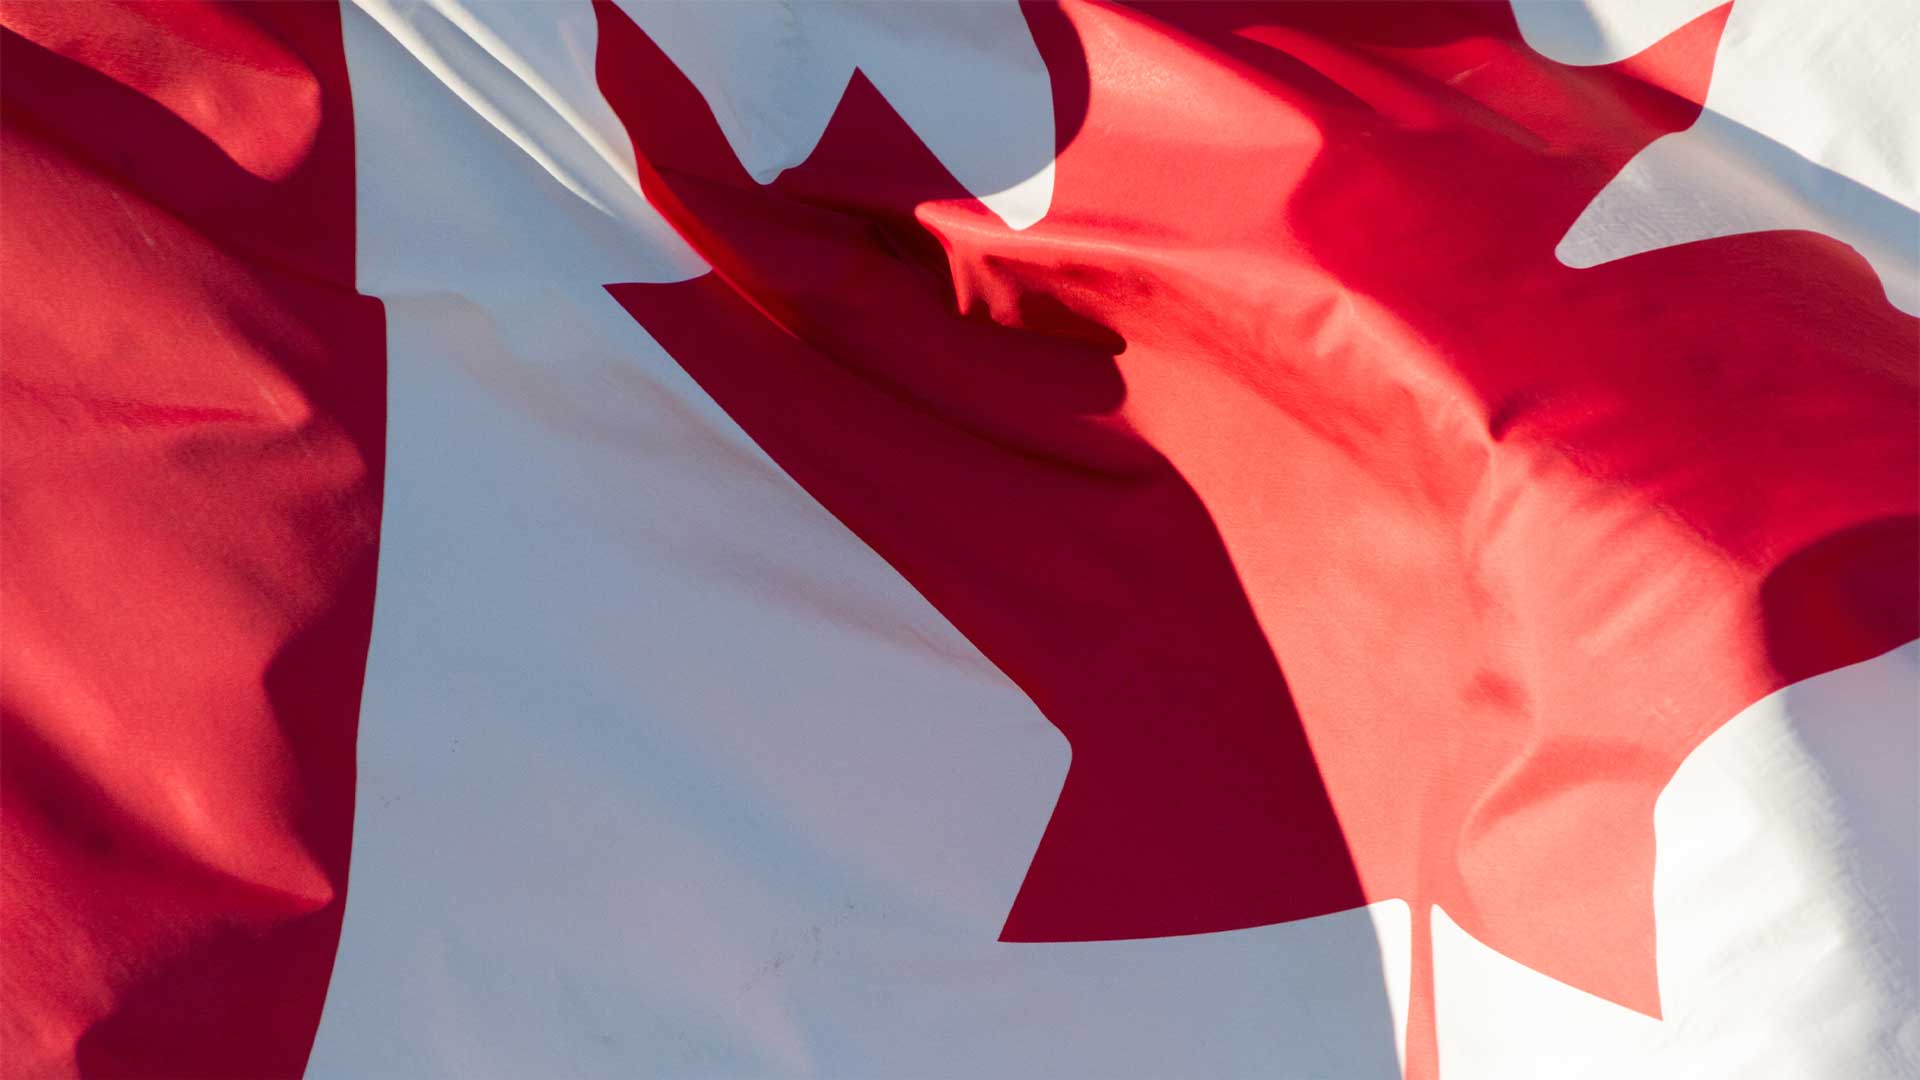 Trudeau Plays Cruel April Fools’ Joke with Tax Hike